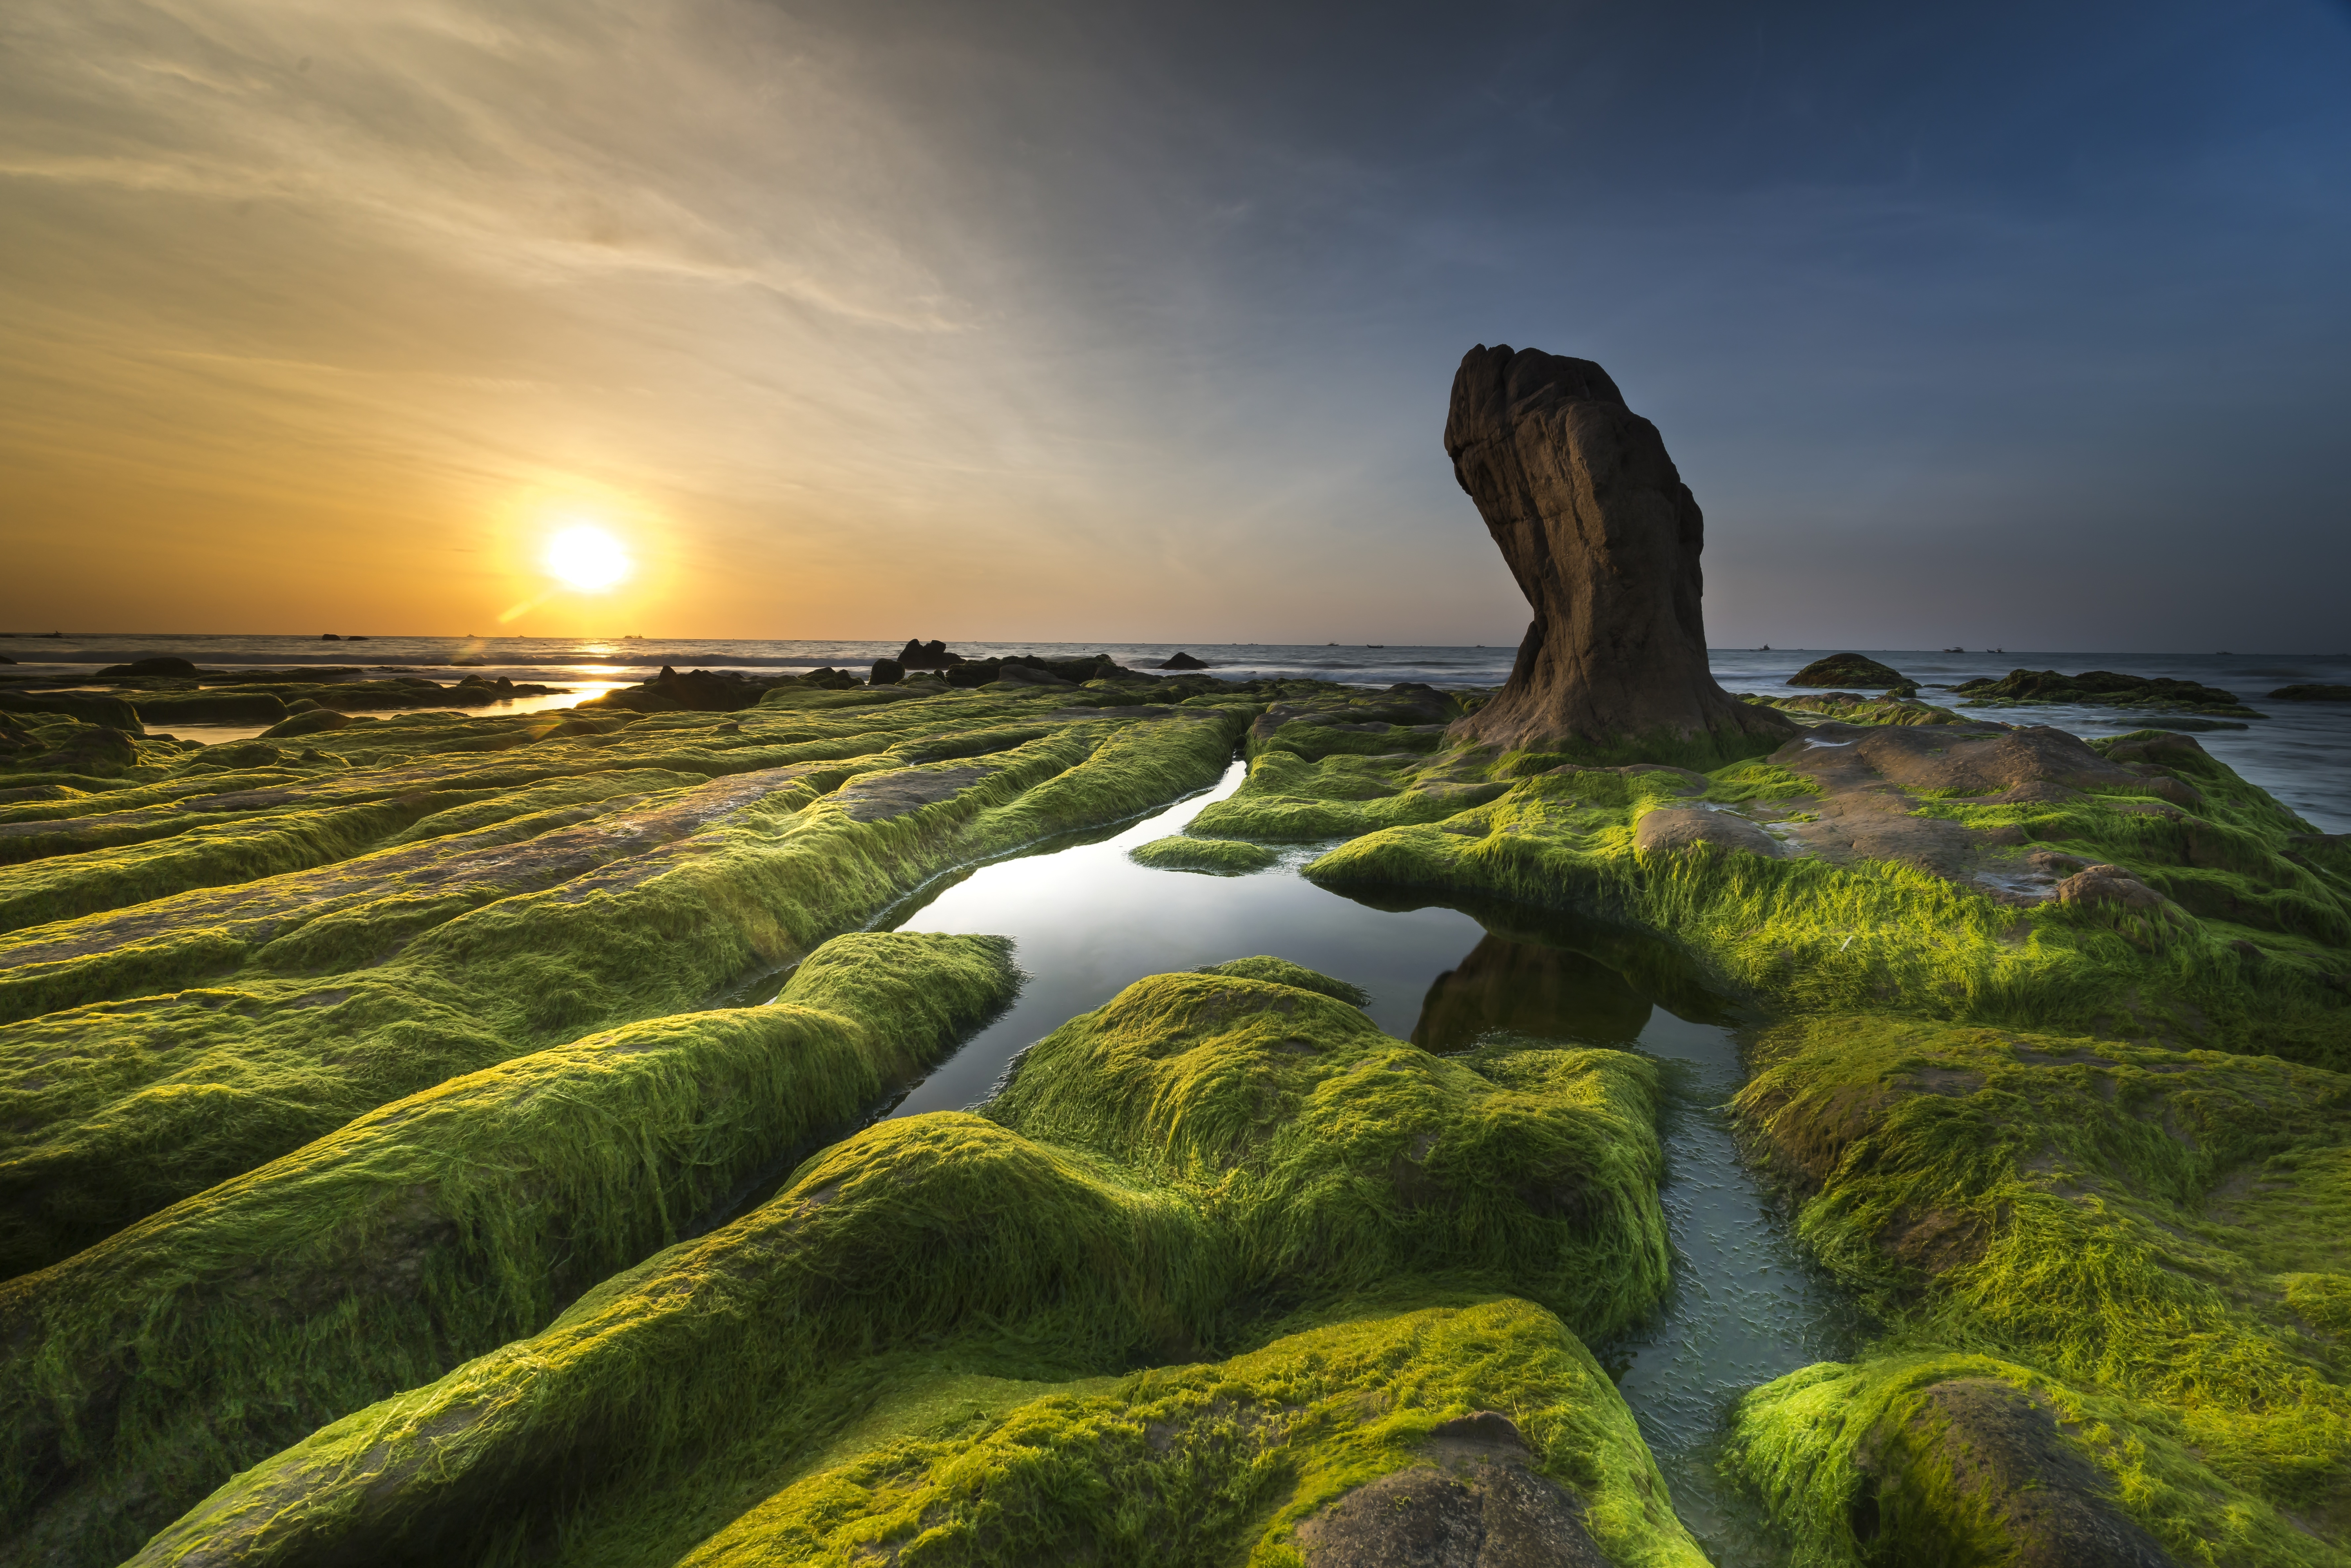 Algae or Seaweed on Rocks by Quang Nguyen vinh